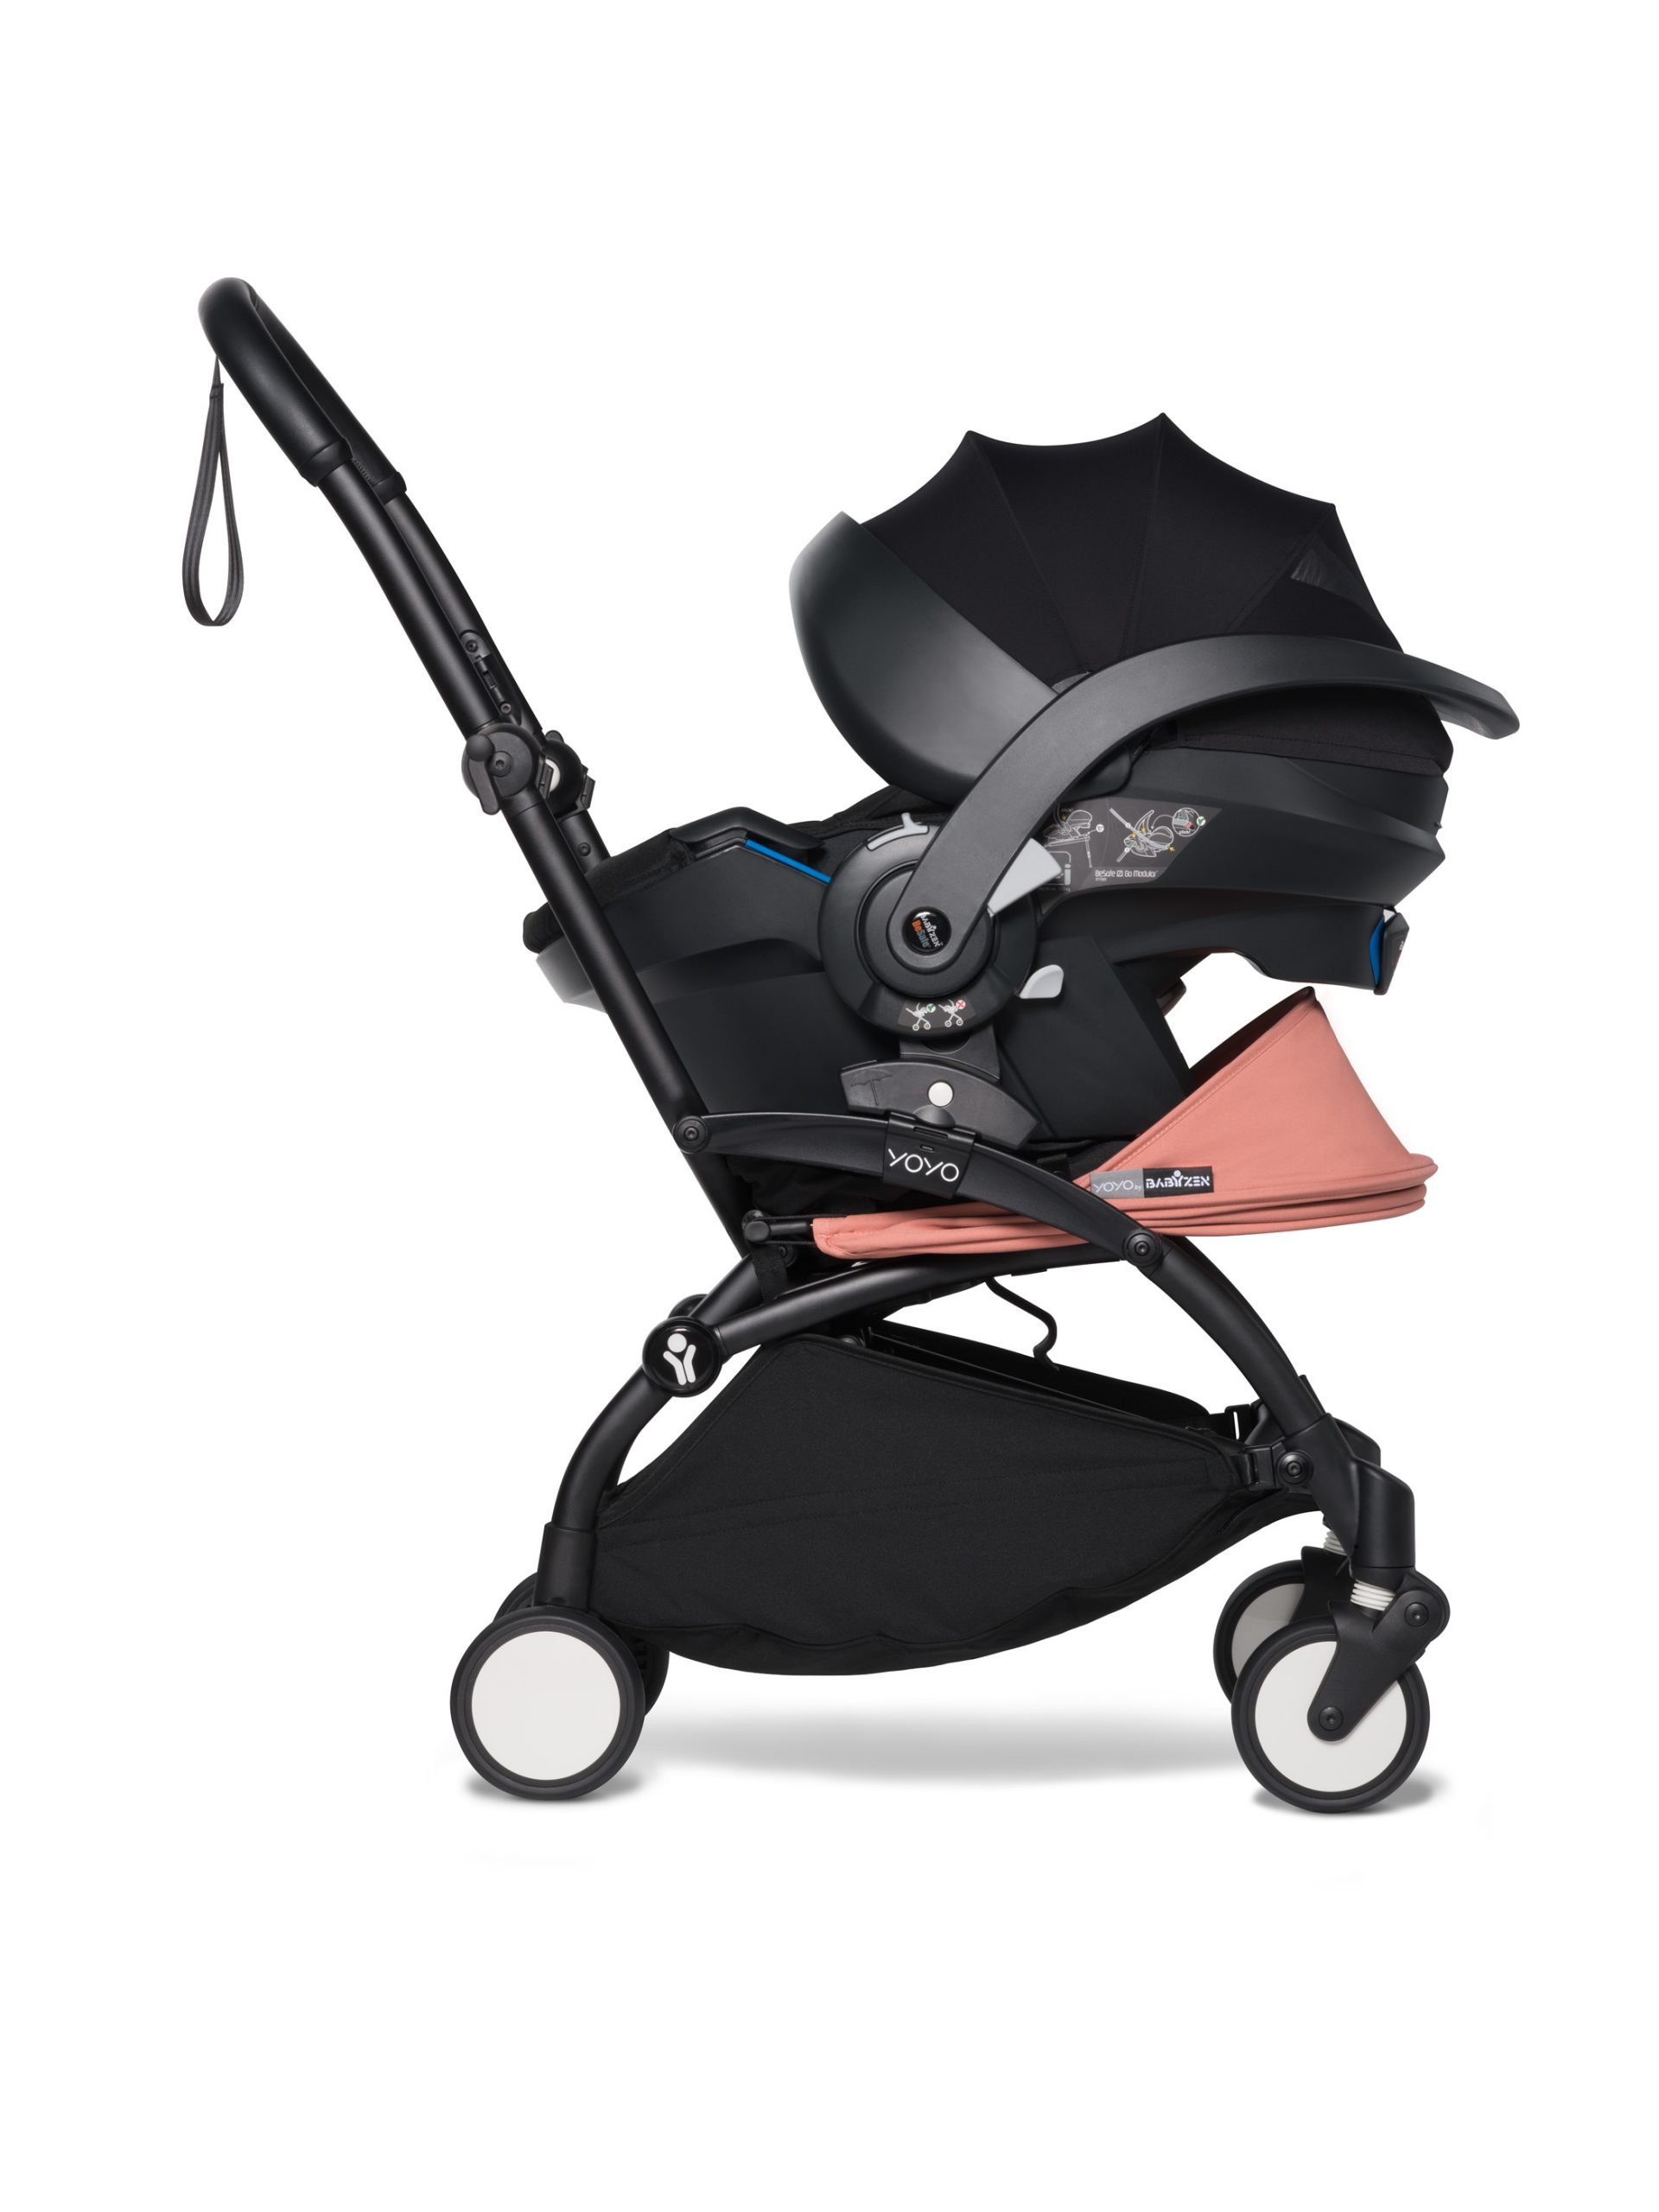 babyzen yoyo stroller car seat compatibility